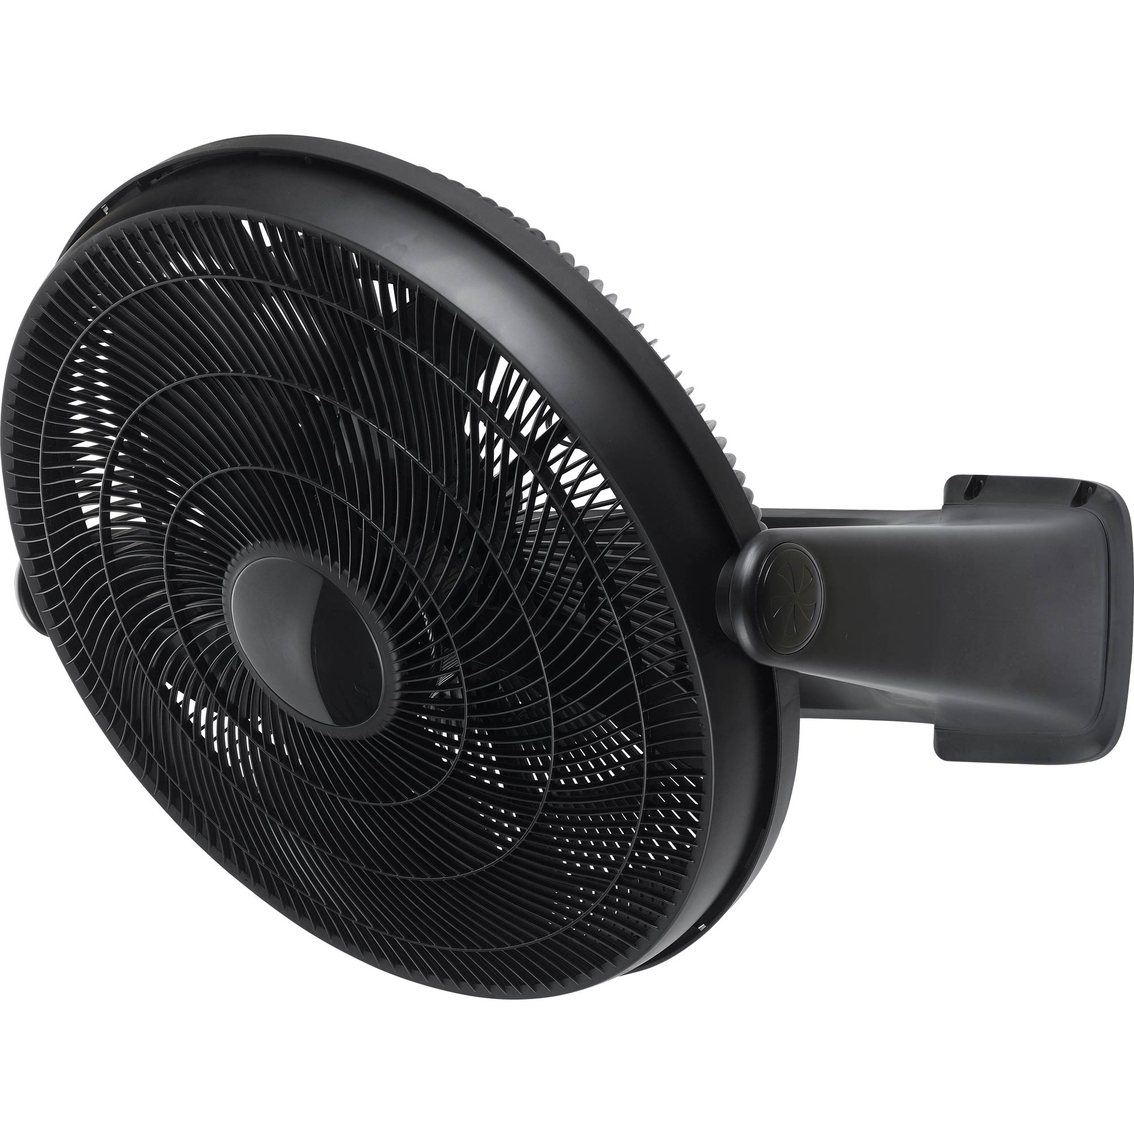 Pelonis 20 in. 3 Speed Black Air Circulator Fan - Image 4 of 4